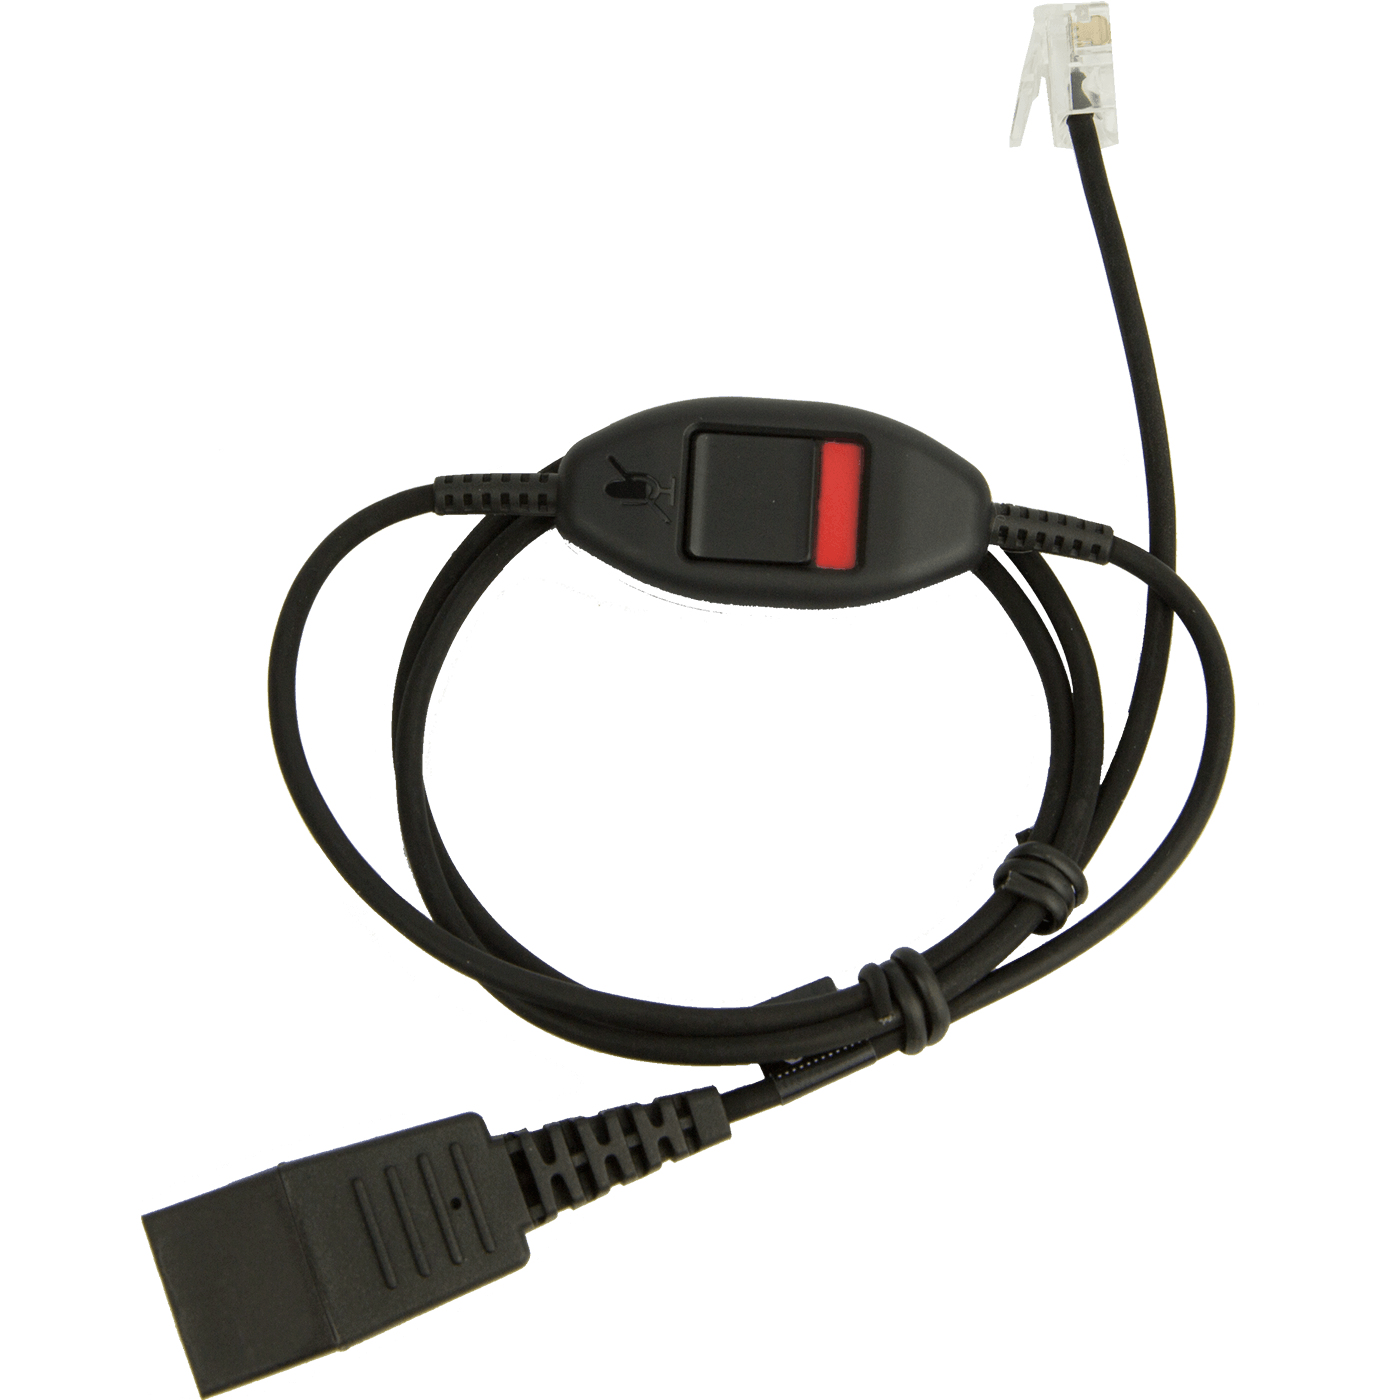 Jabra Headset-Kabel - RJ-10 bis Quick Disconnect